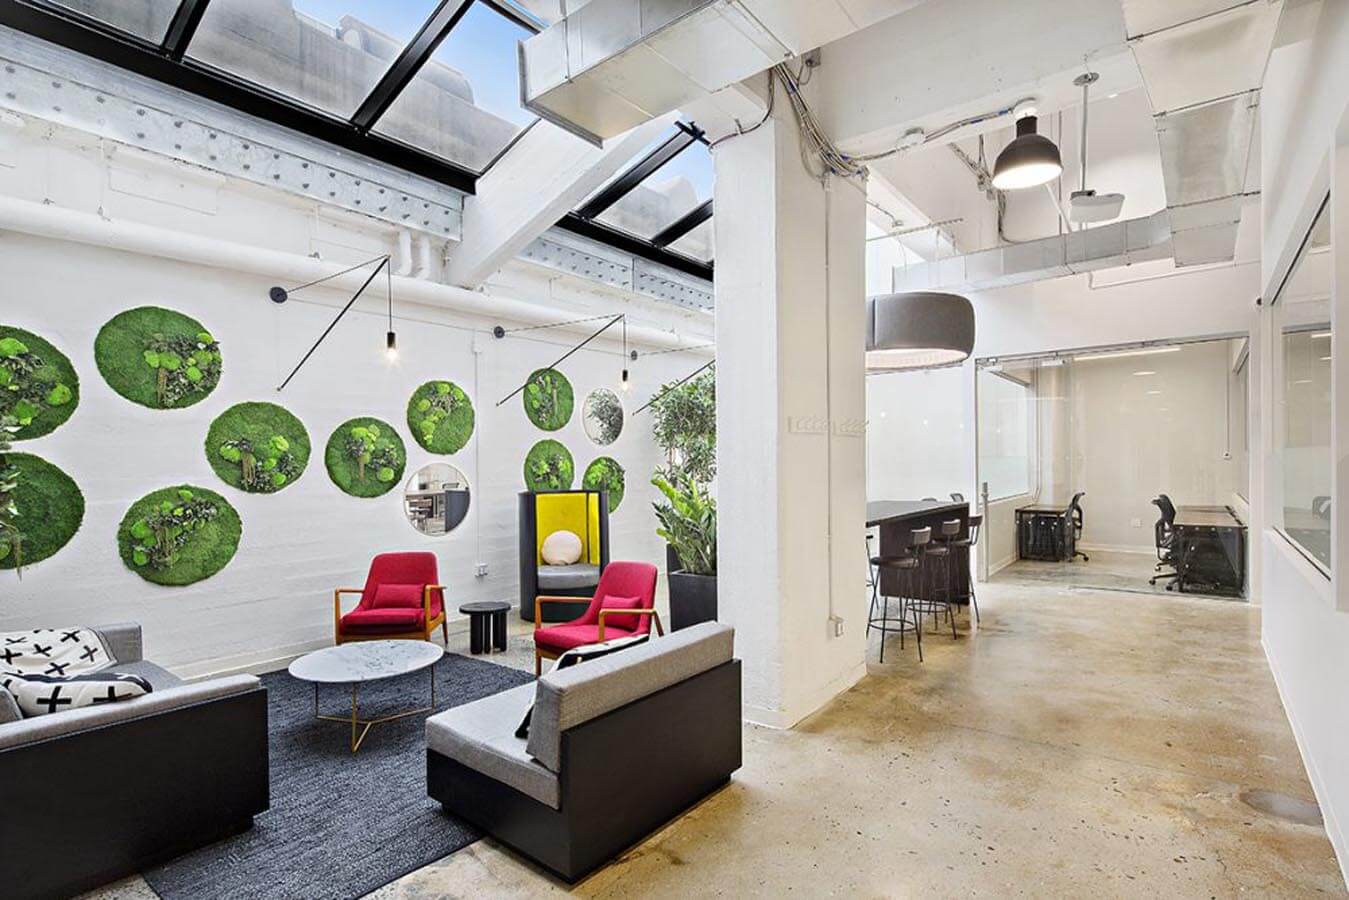 Moss Vertical Garden For An Office Space